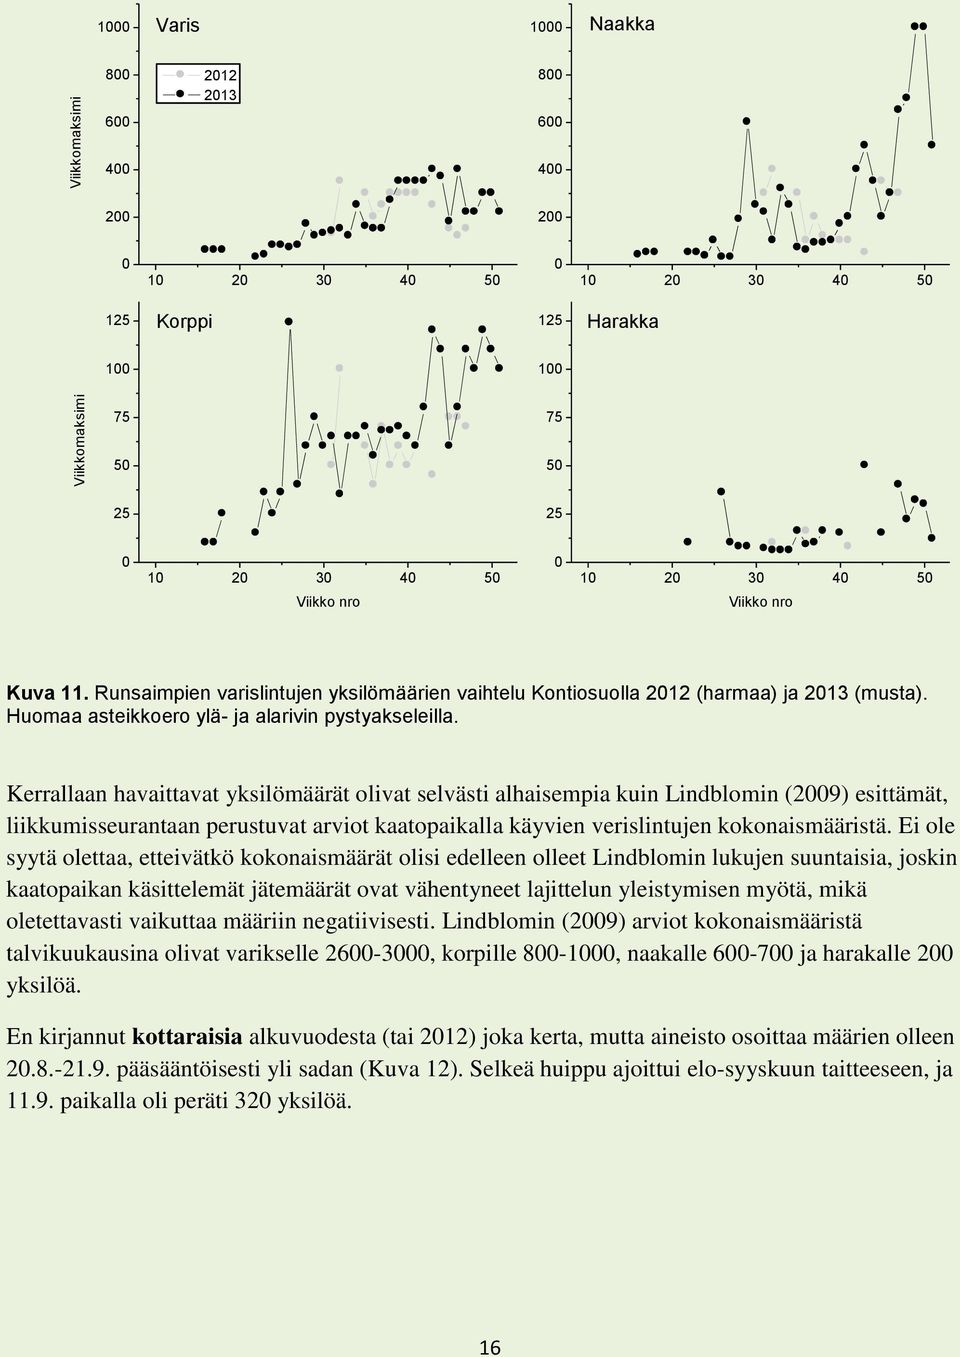 Kerrallaan havaittavat yksilömäärät olivat selvästi alhaisempia kuin Lindblomin (2009) esittämät, liikkumisseurantaan perustuvat arviot kaatopaikalla käyvien verislintujen kokonaismääristä.